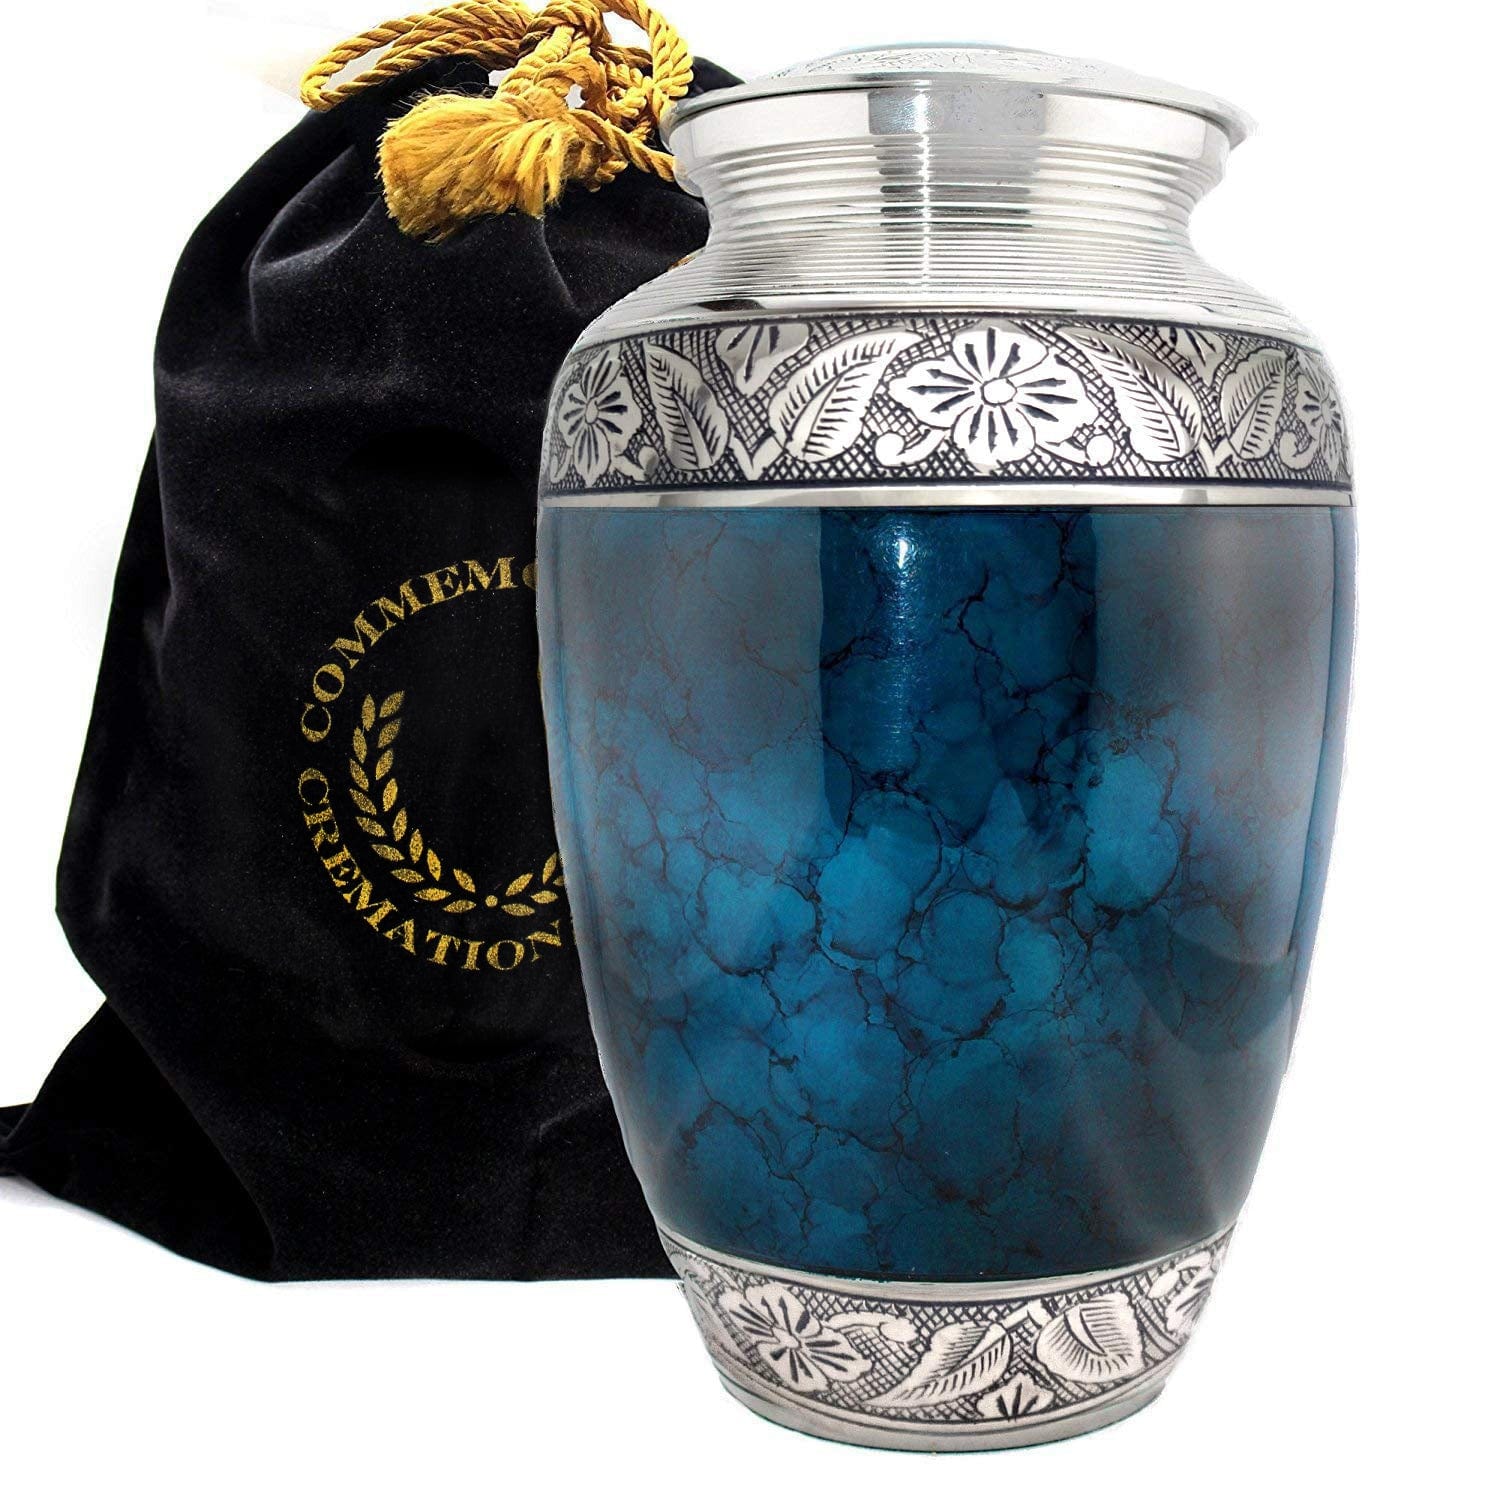 Commemorative Cremation Urns Moonstone Blue Cremation Urn